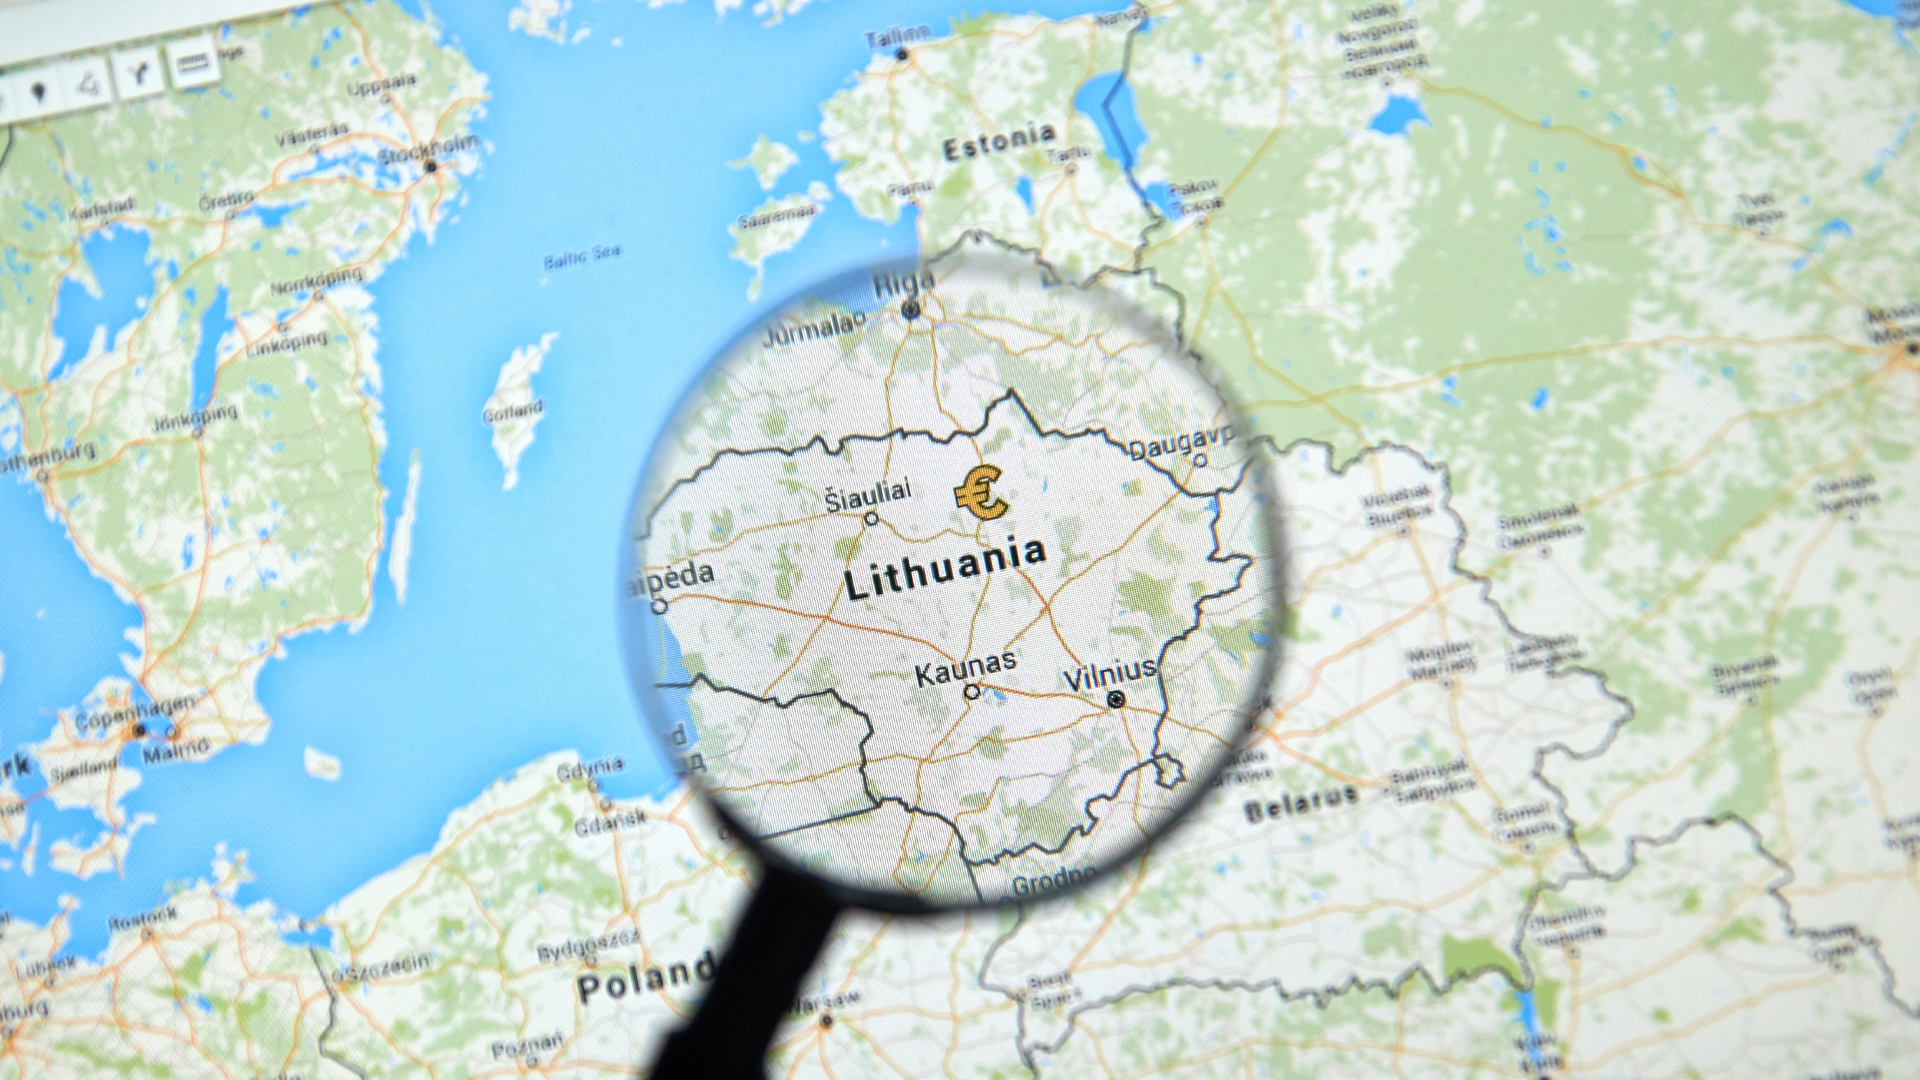 Lithuania on Google Maps